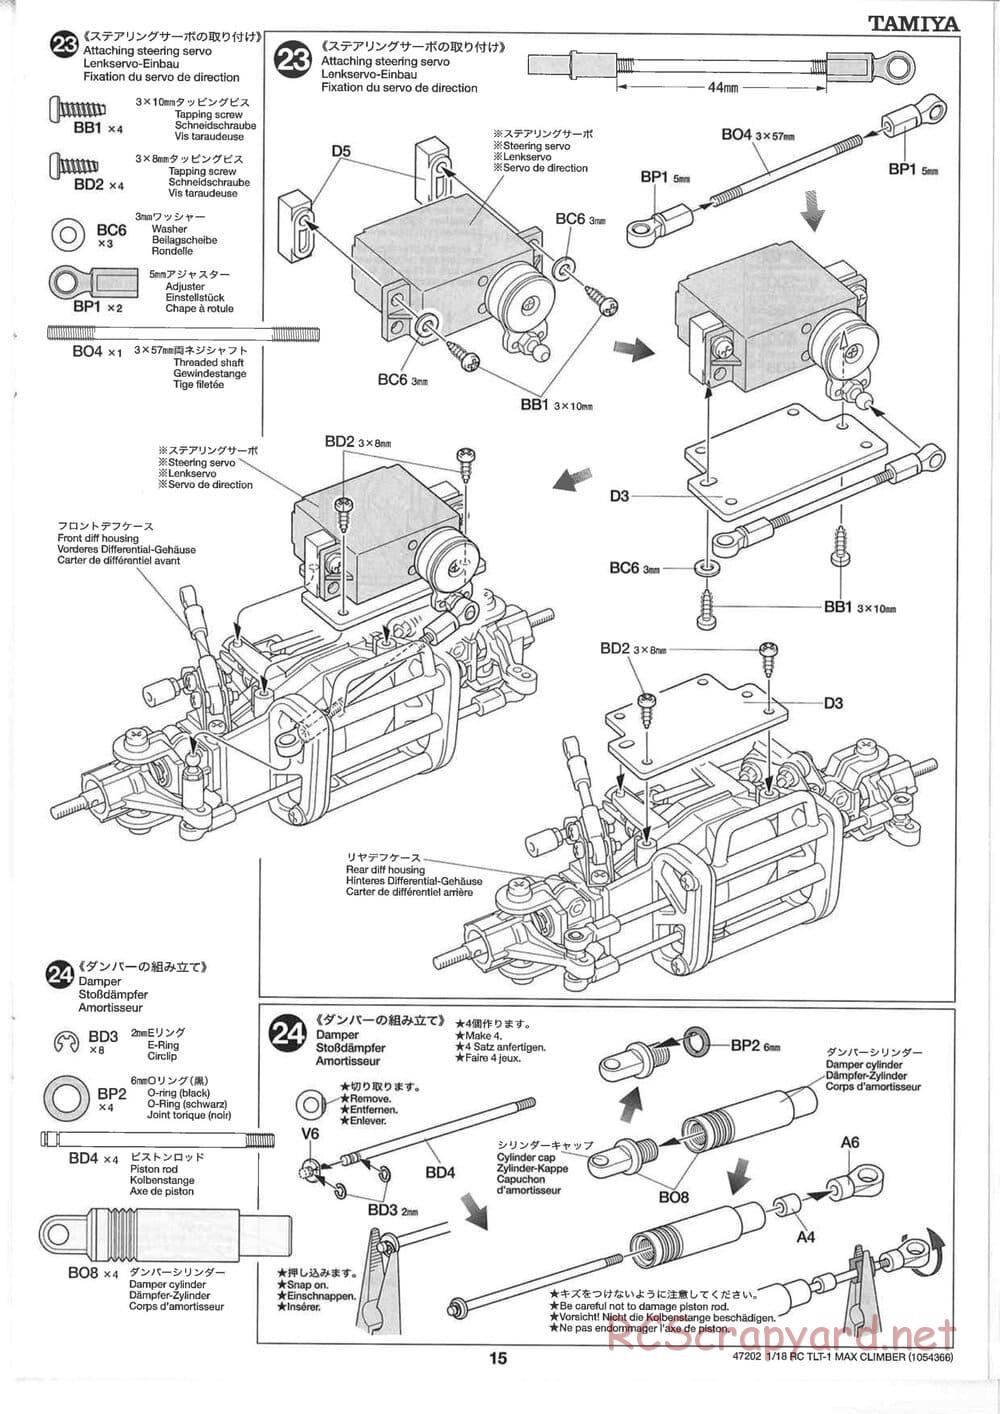 Tamiya - Max Climber - TLT-1 Chassis - Manual - Page 15